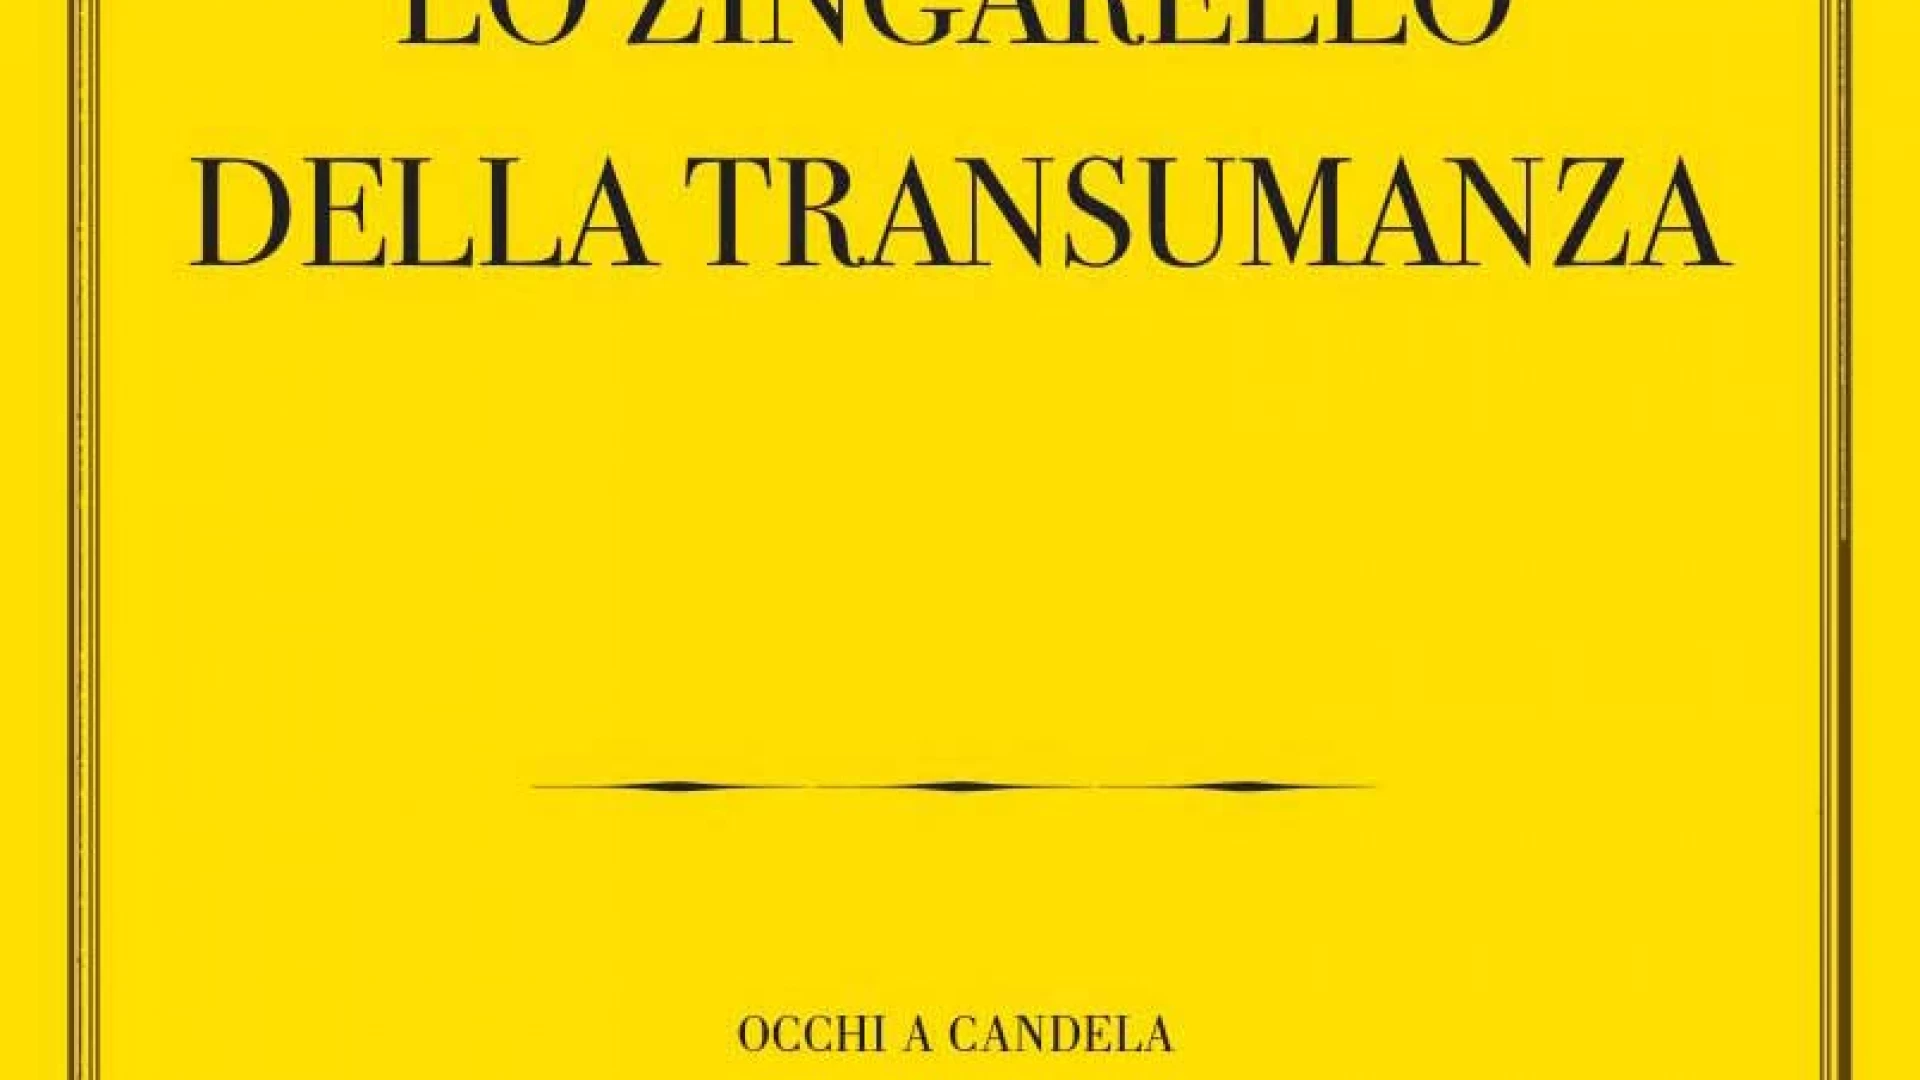 “Lo zingarello della Transumanza” di Roberta Muzio. Questa sera la presentazione a Macchiagodena in occasione di Genius Loci.